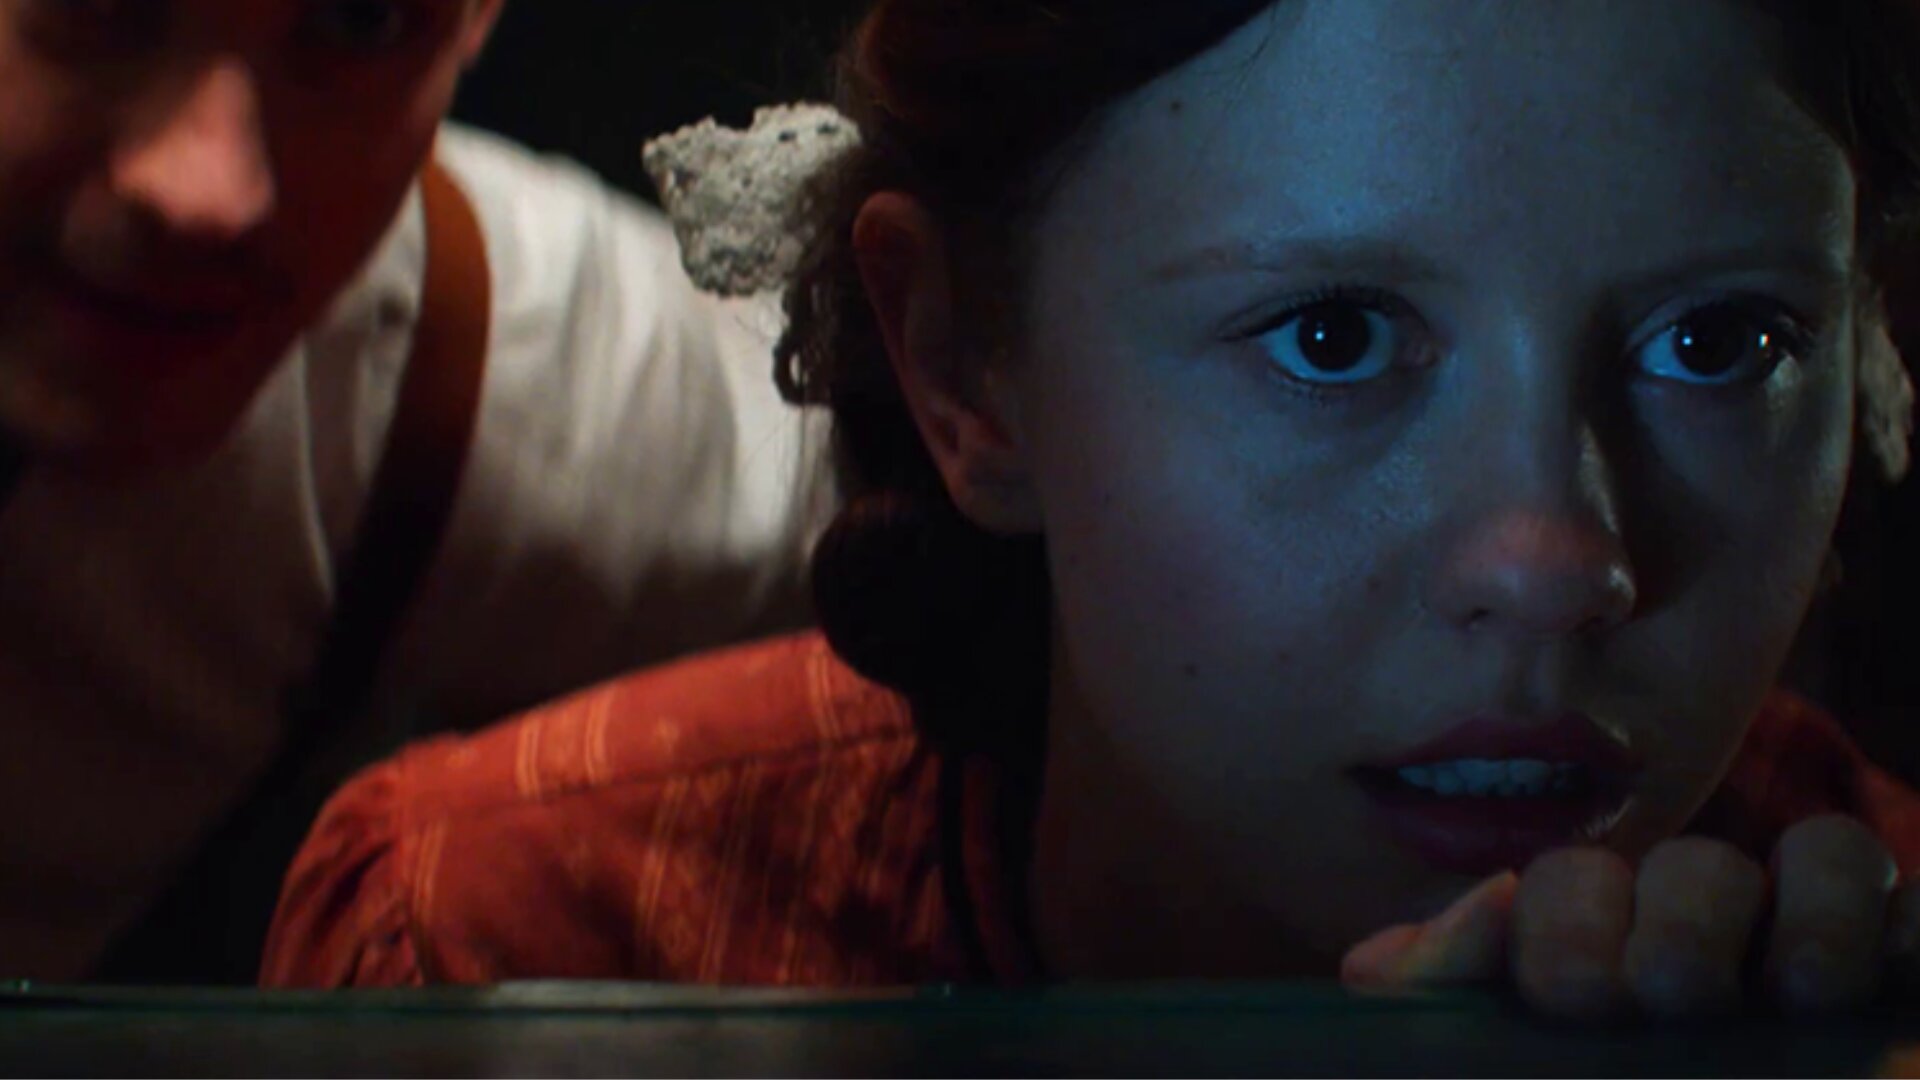 میا گوث در نقش پرل در فیلم مروارید رویای سینمایی خود را محقق می کند